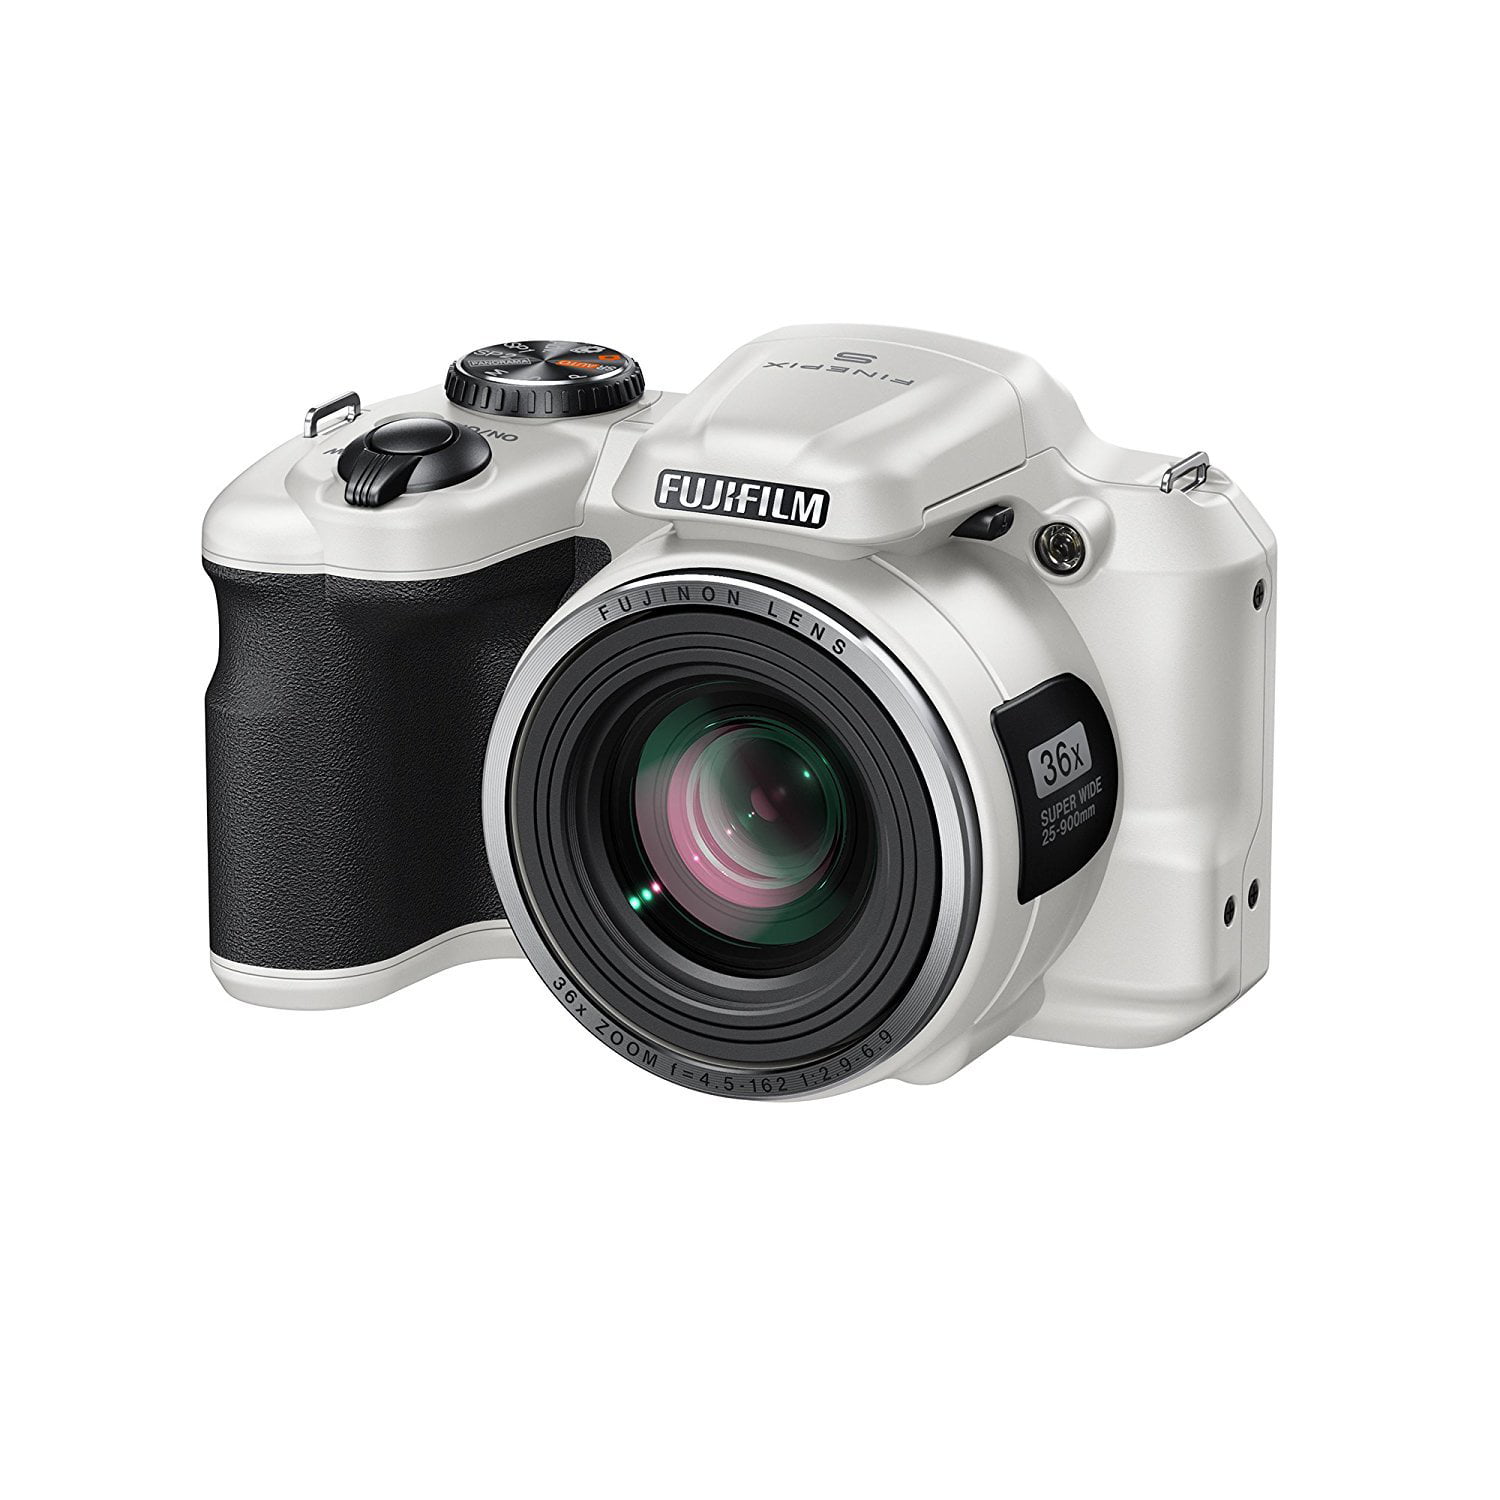 Fujifilm FinePix S8600 Camera - White (16MP, 36x Optical Zoom) 3 inch LCD